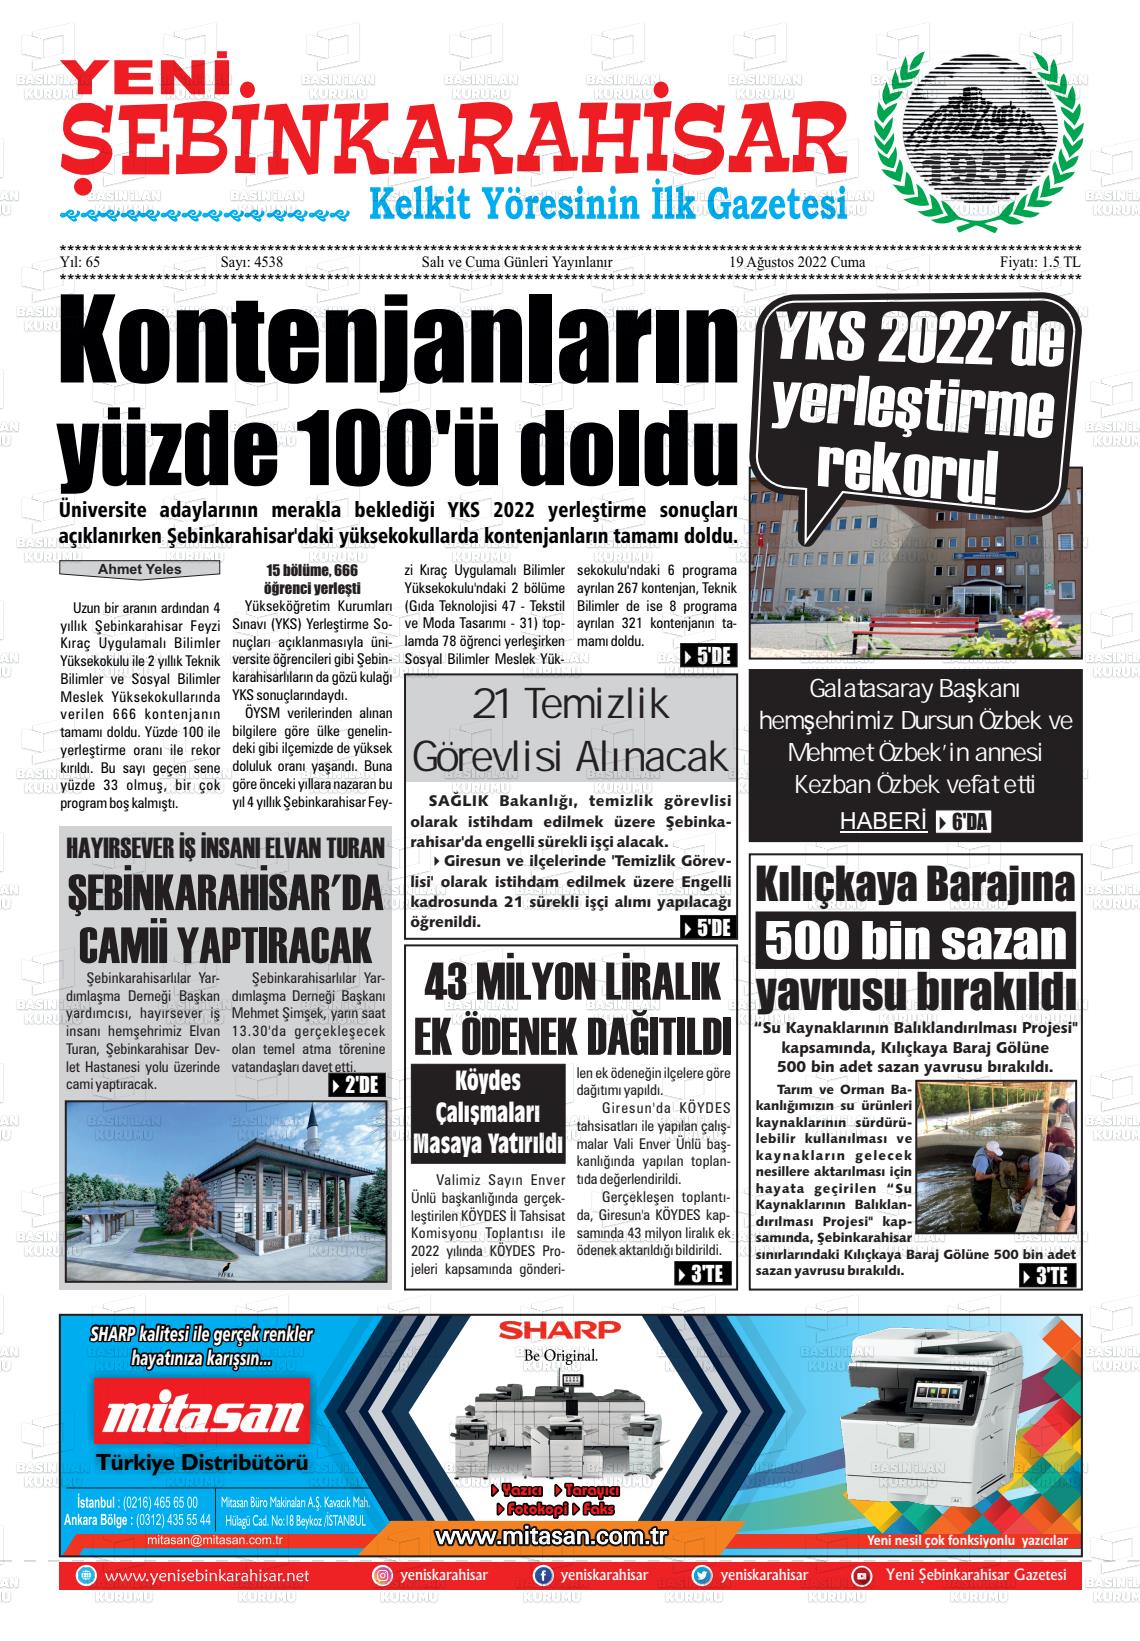 19 Ağustos 2022 Yeni Şebinkarahisar Gazete Manşeti